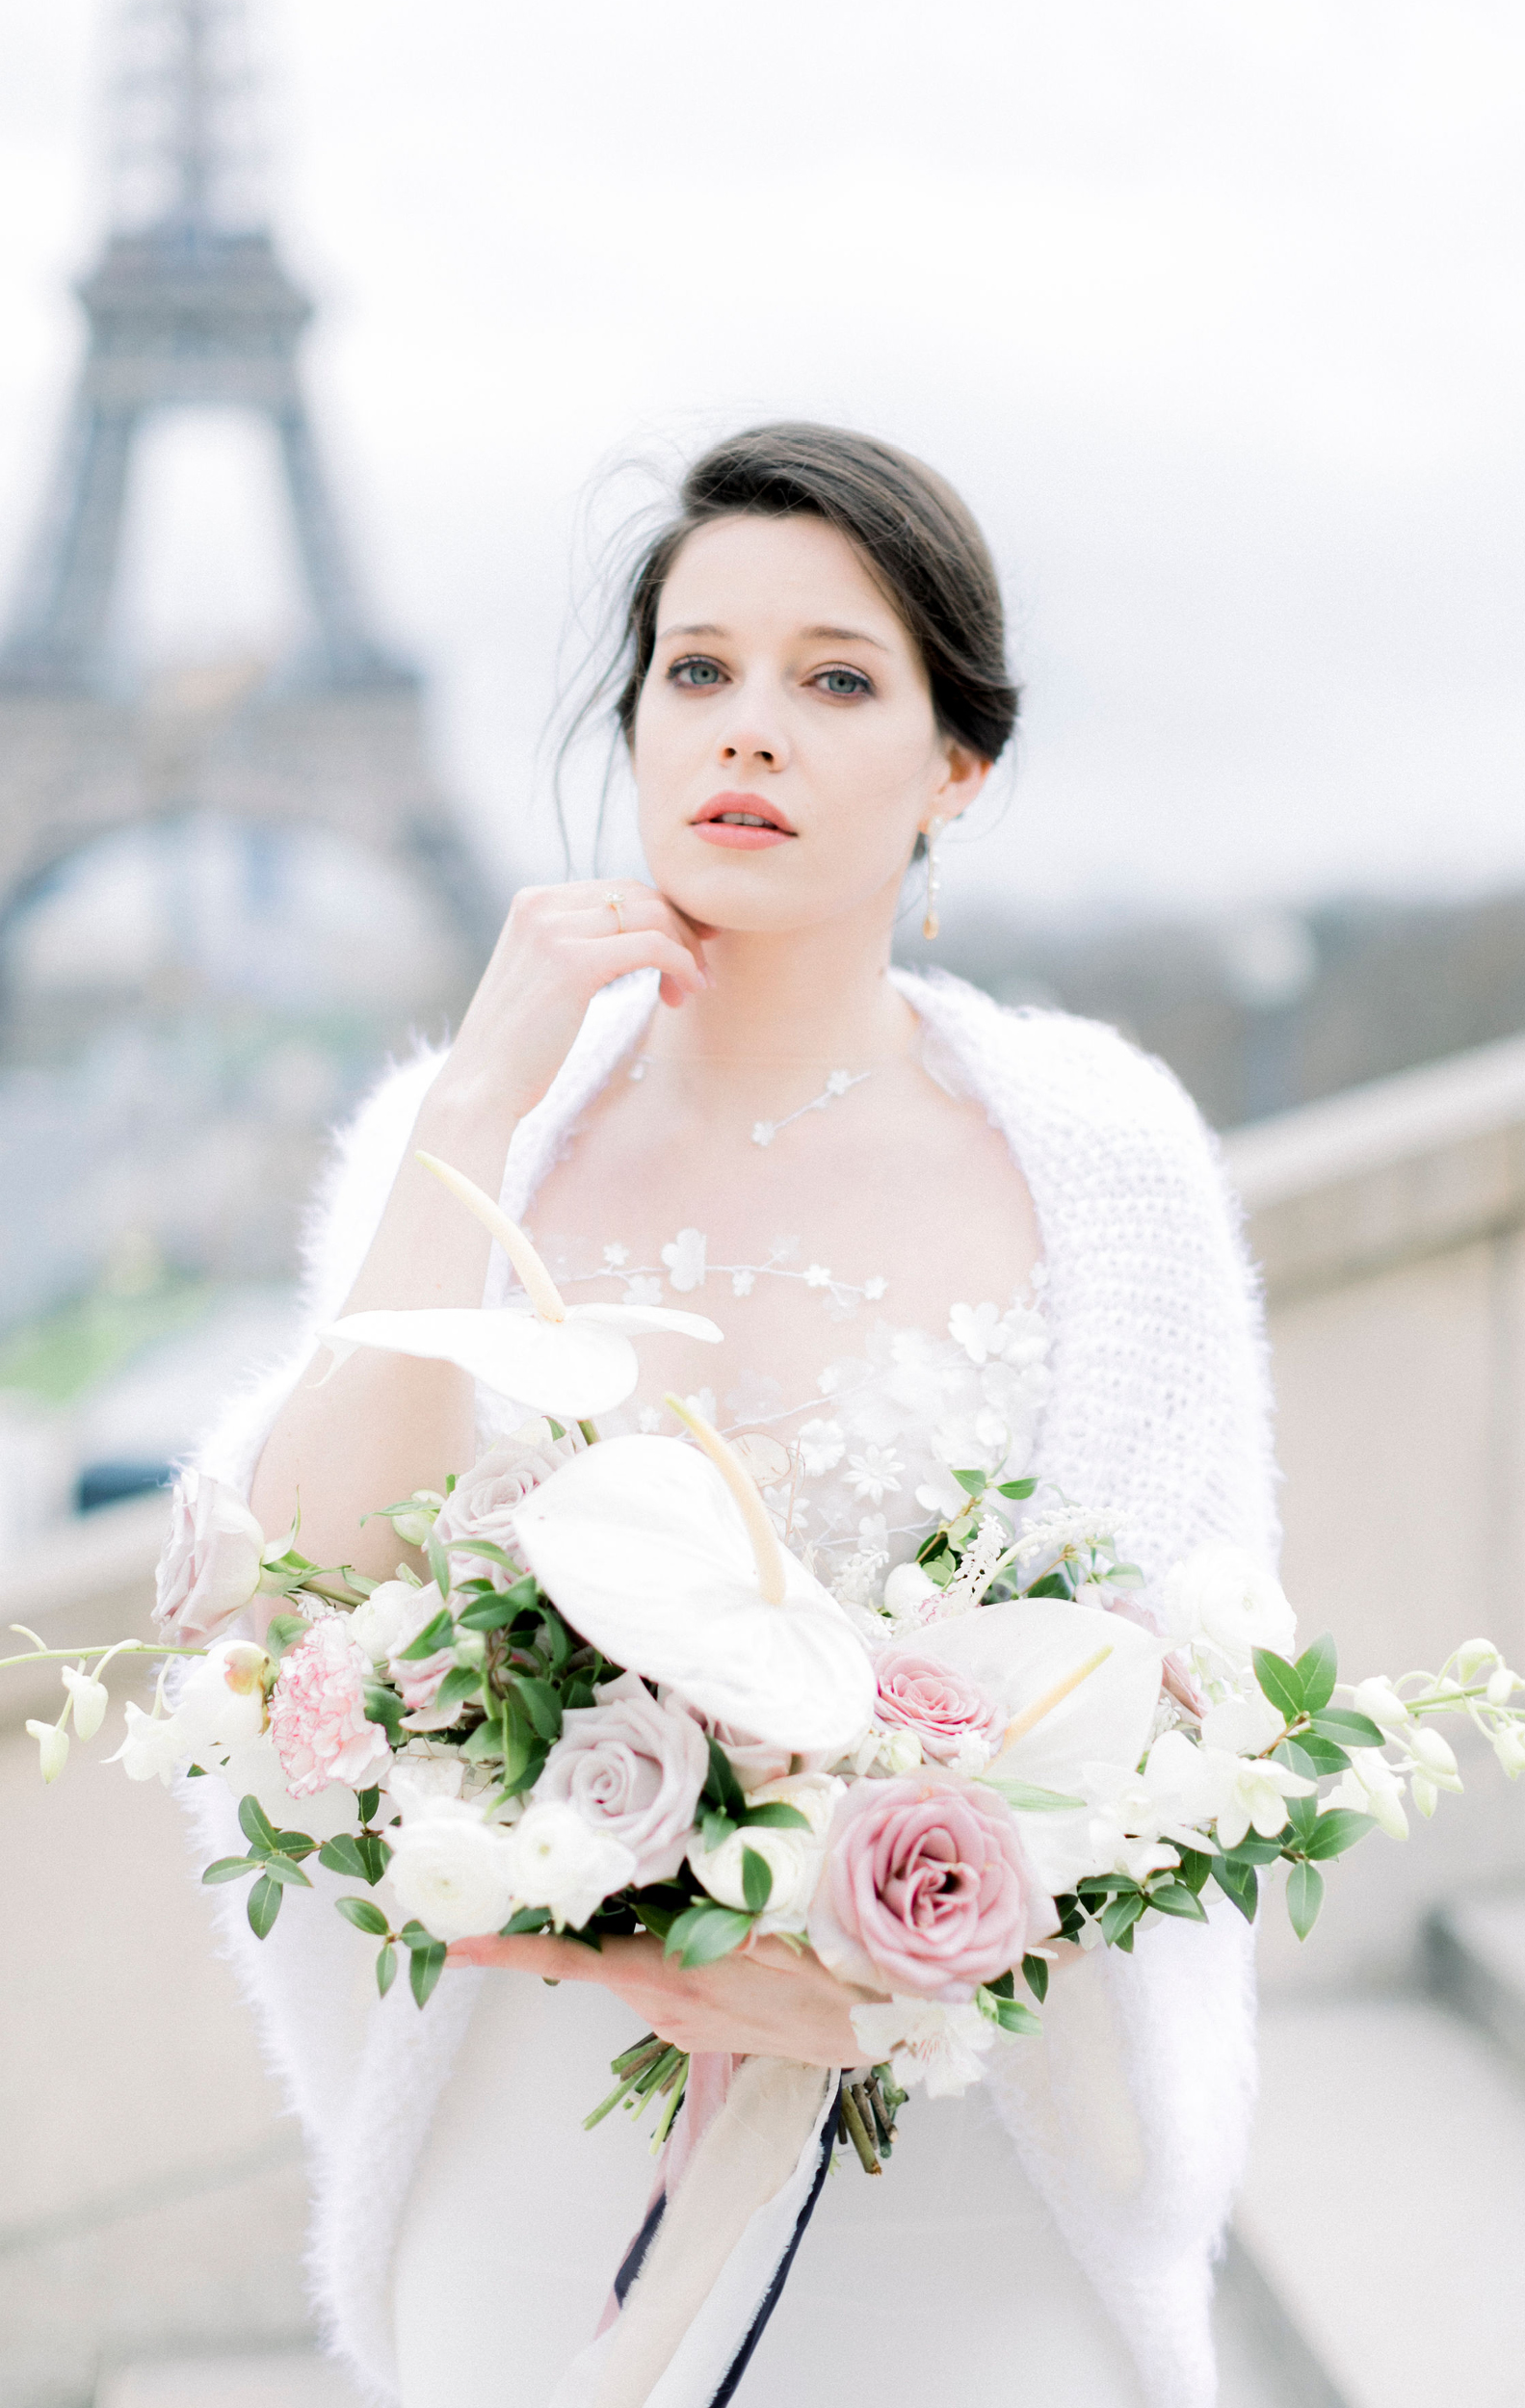 Shooting mariage éditorial à paris
bouquet de mariée fine art florals